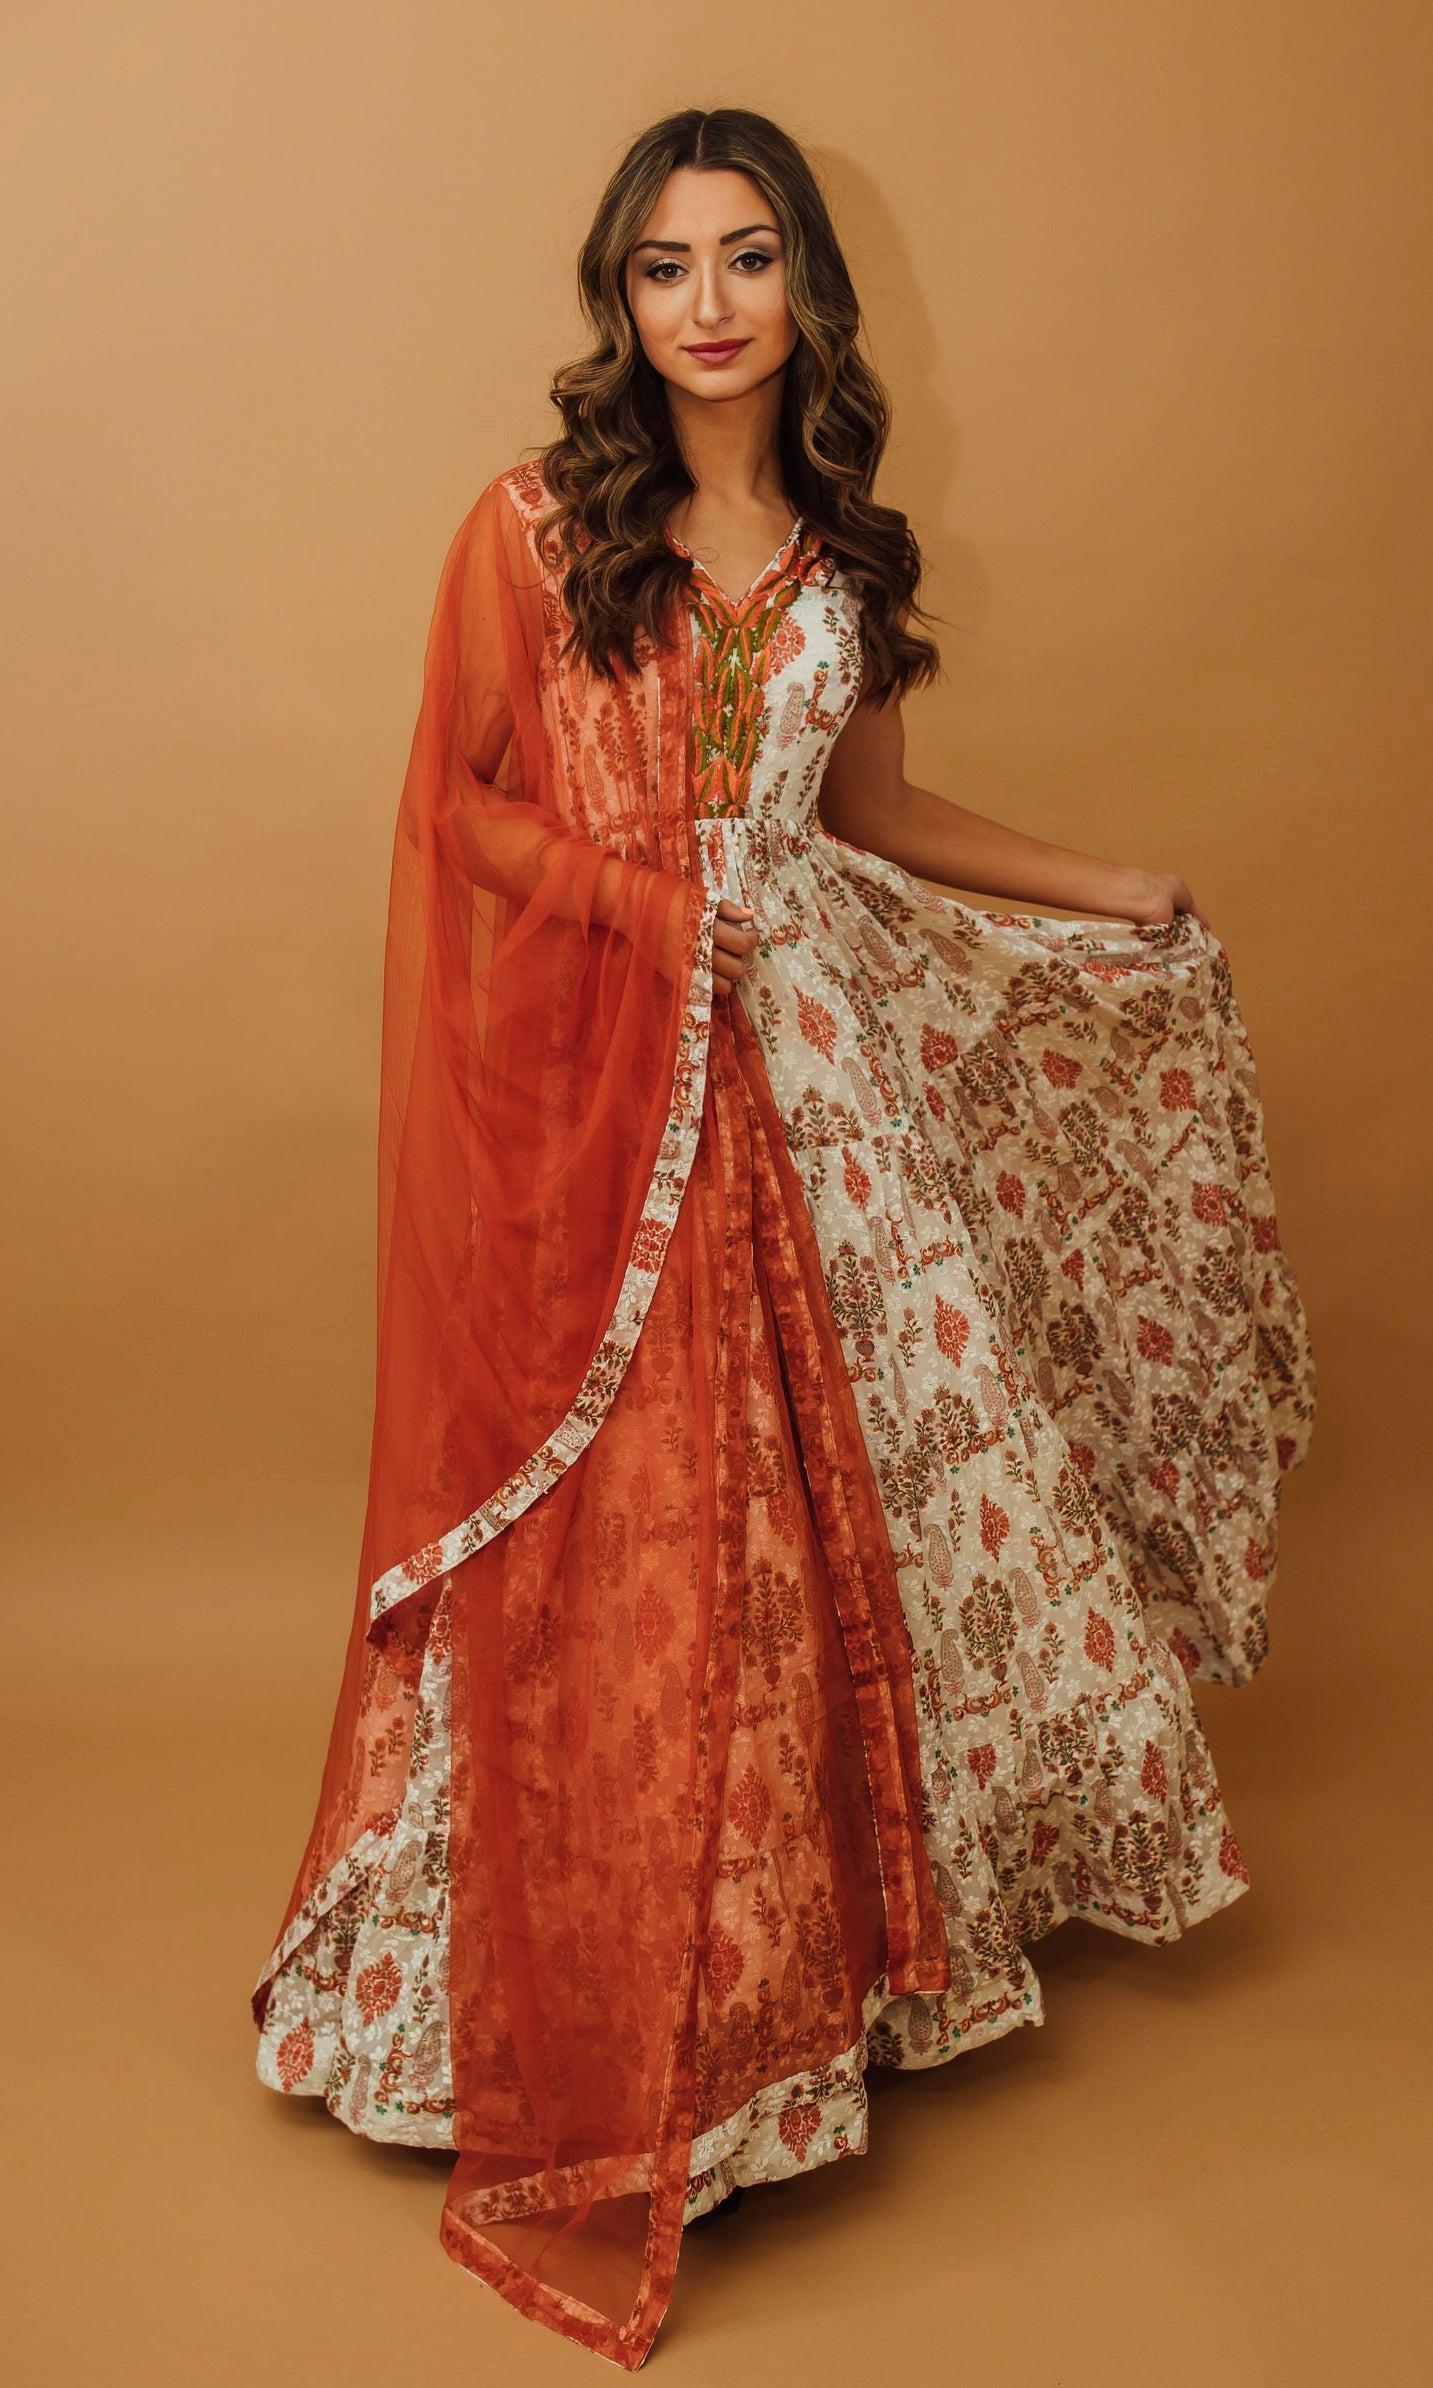 Silver Color Bridal Lehenga for Indian Bridal Wear | Hochzeit kleidung,  Kleider hochzeit, Pakistanische hochzeitskleider